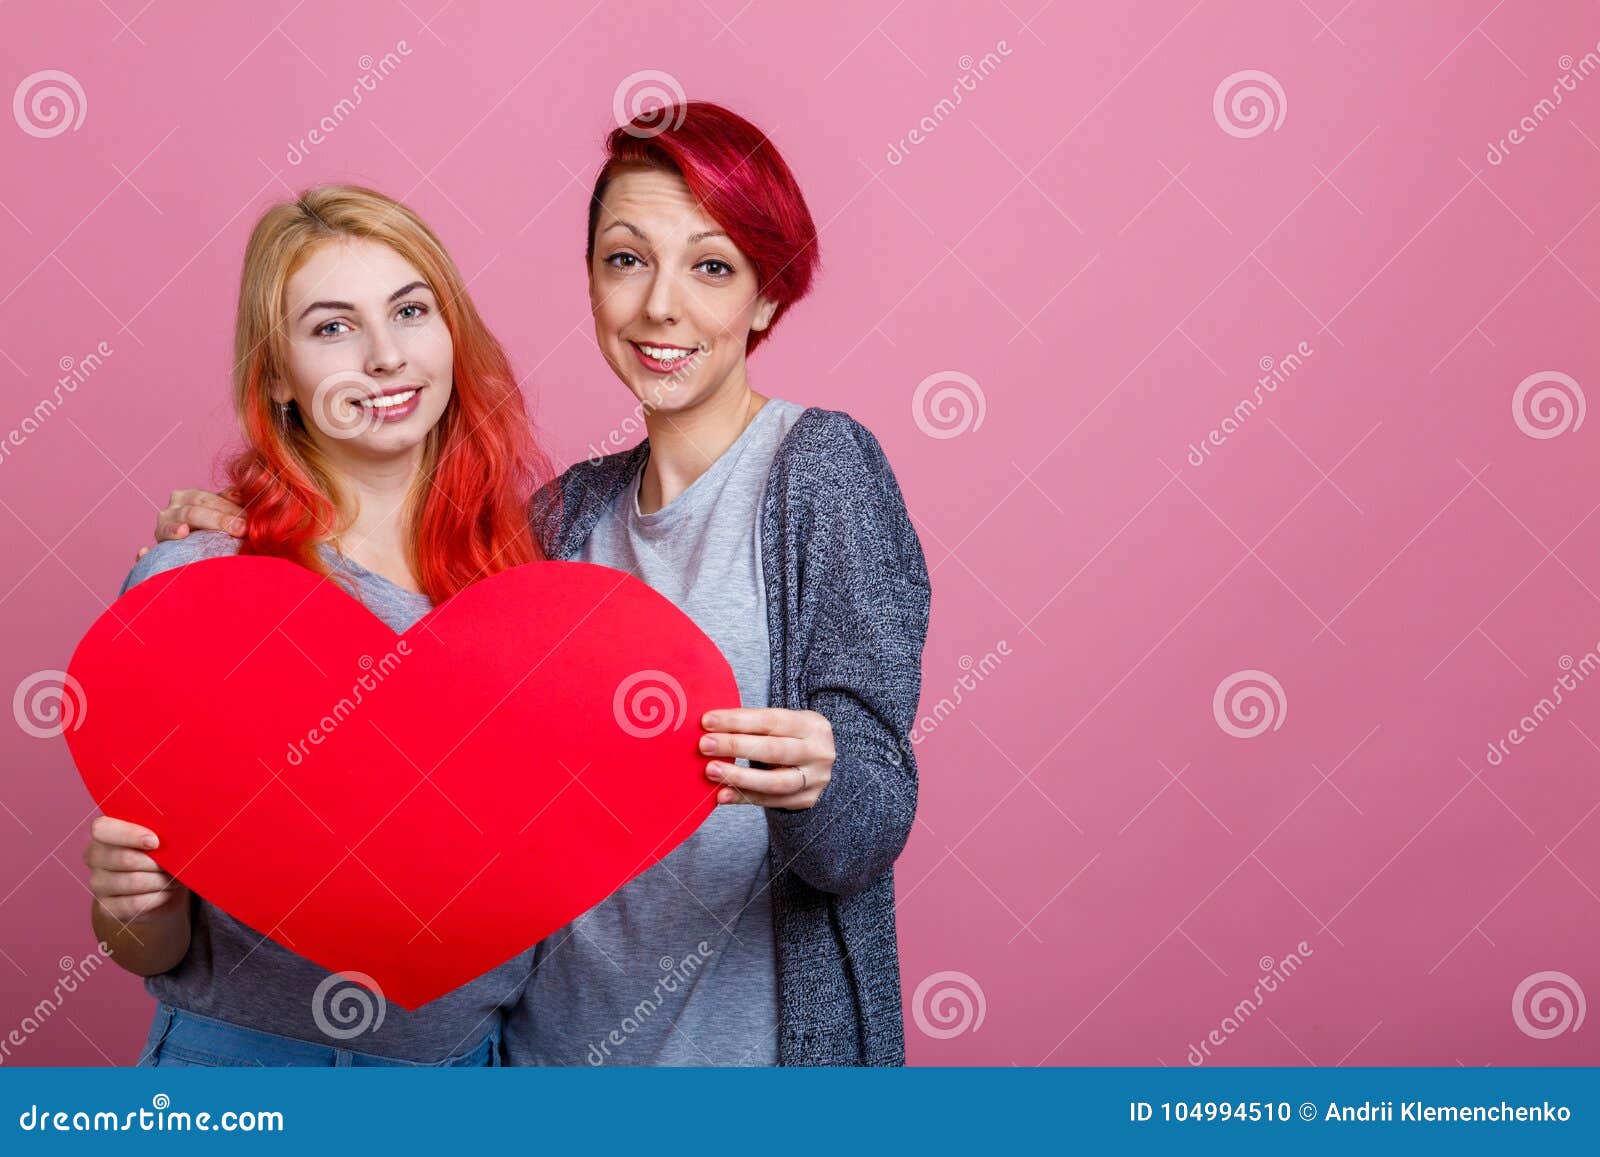 rouge chaud lesbiennes